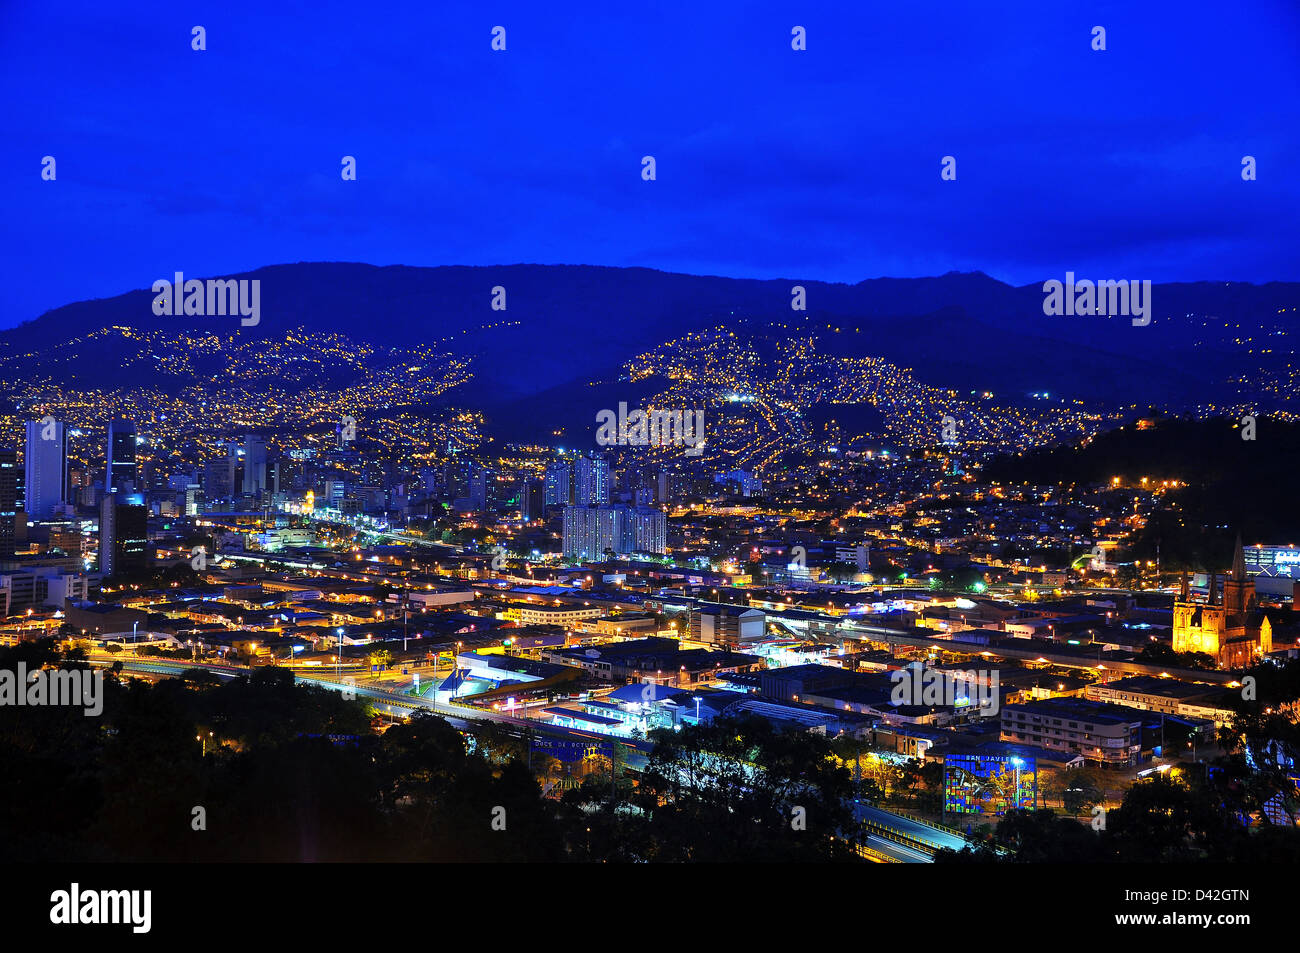 Une vue de Medellin, Colombie prises pendant l'heure bleue. Banque D'Images